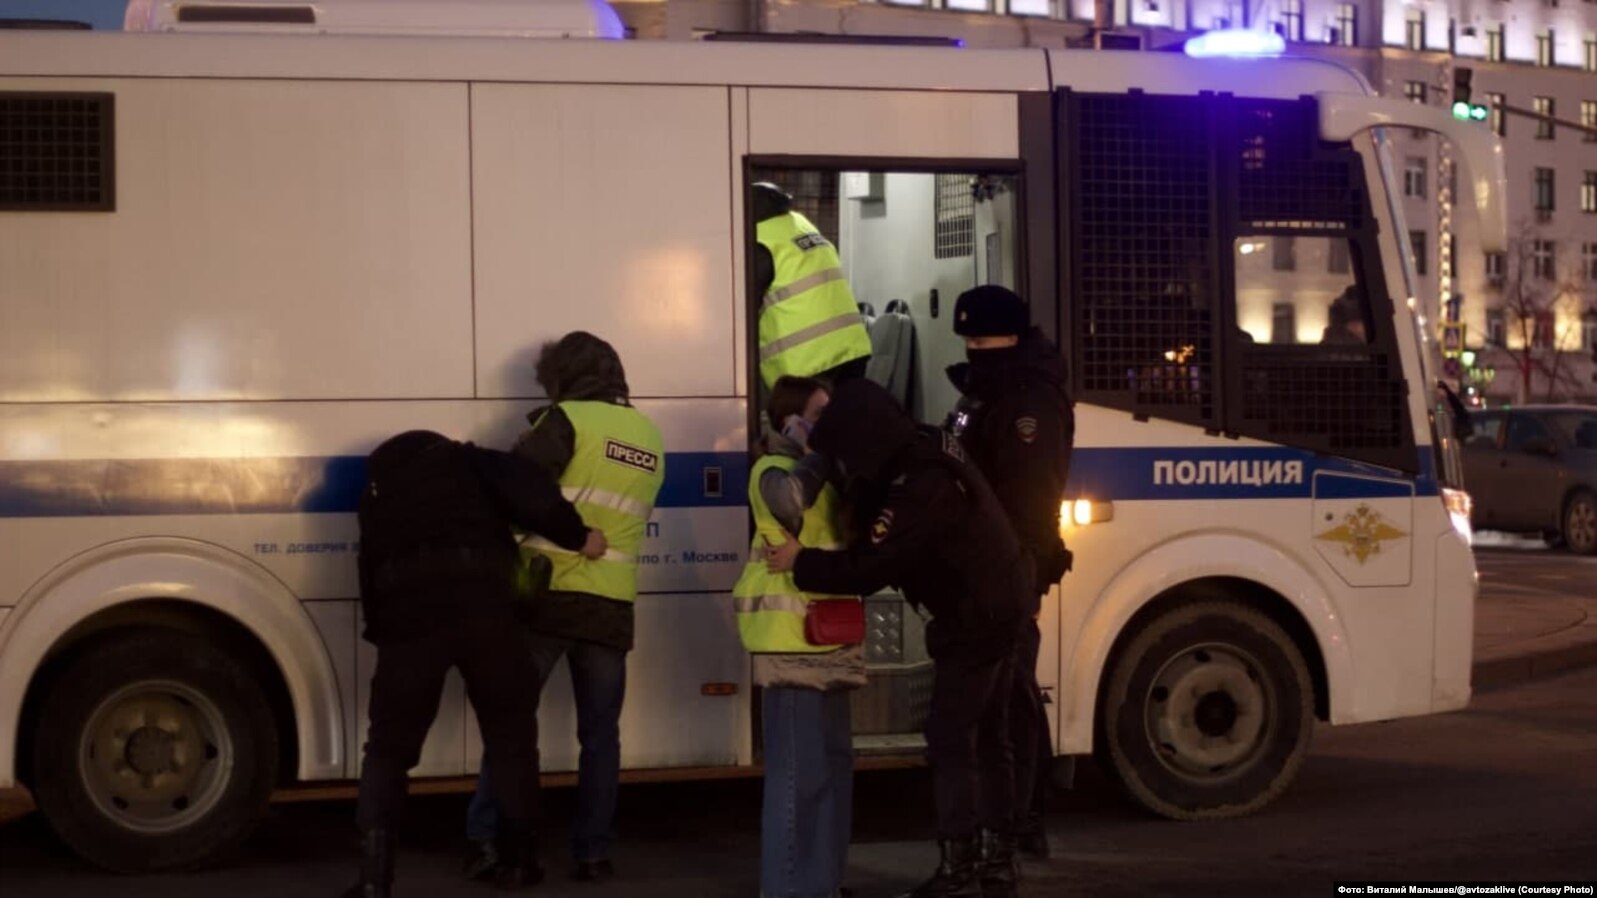 Новости украины 30.03 24. Полиция арест. Задержания в Москве вчера.